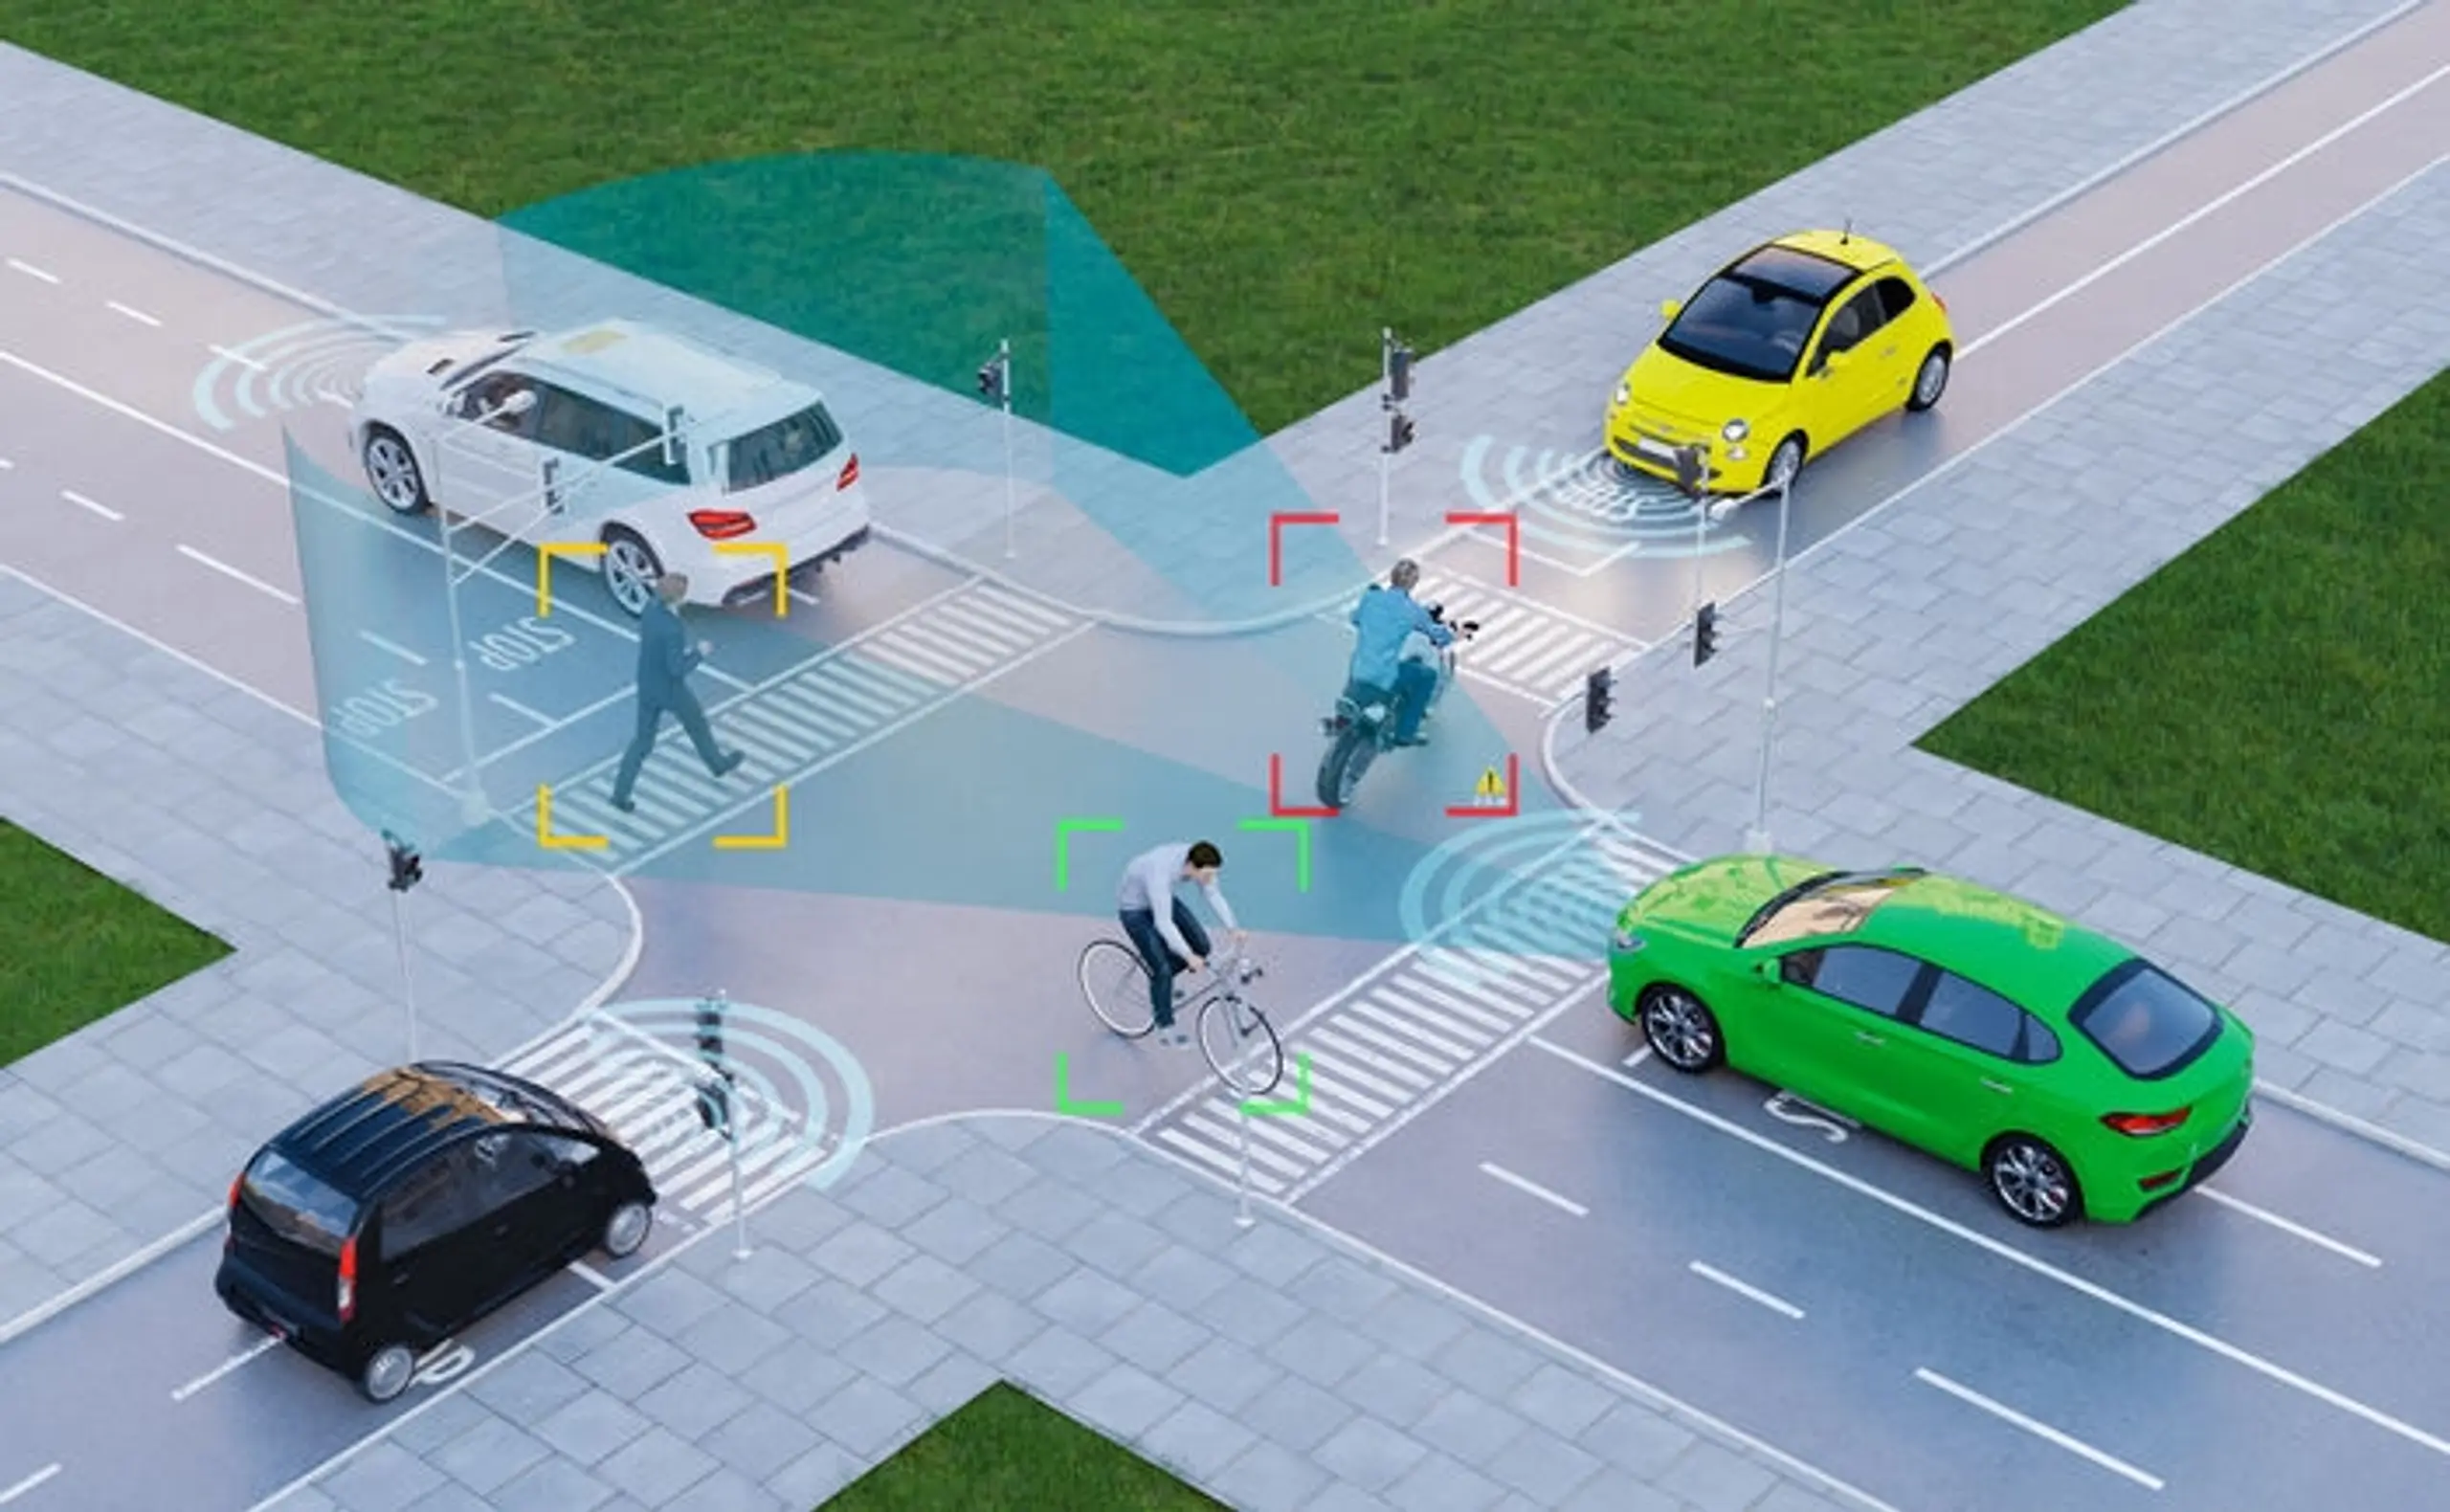 LIDAR: Schlüsseltechnologie und Distanzmessung für selbstfahrende Autos und andere autonome Maschinen